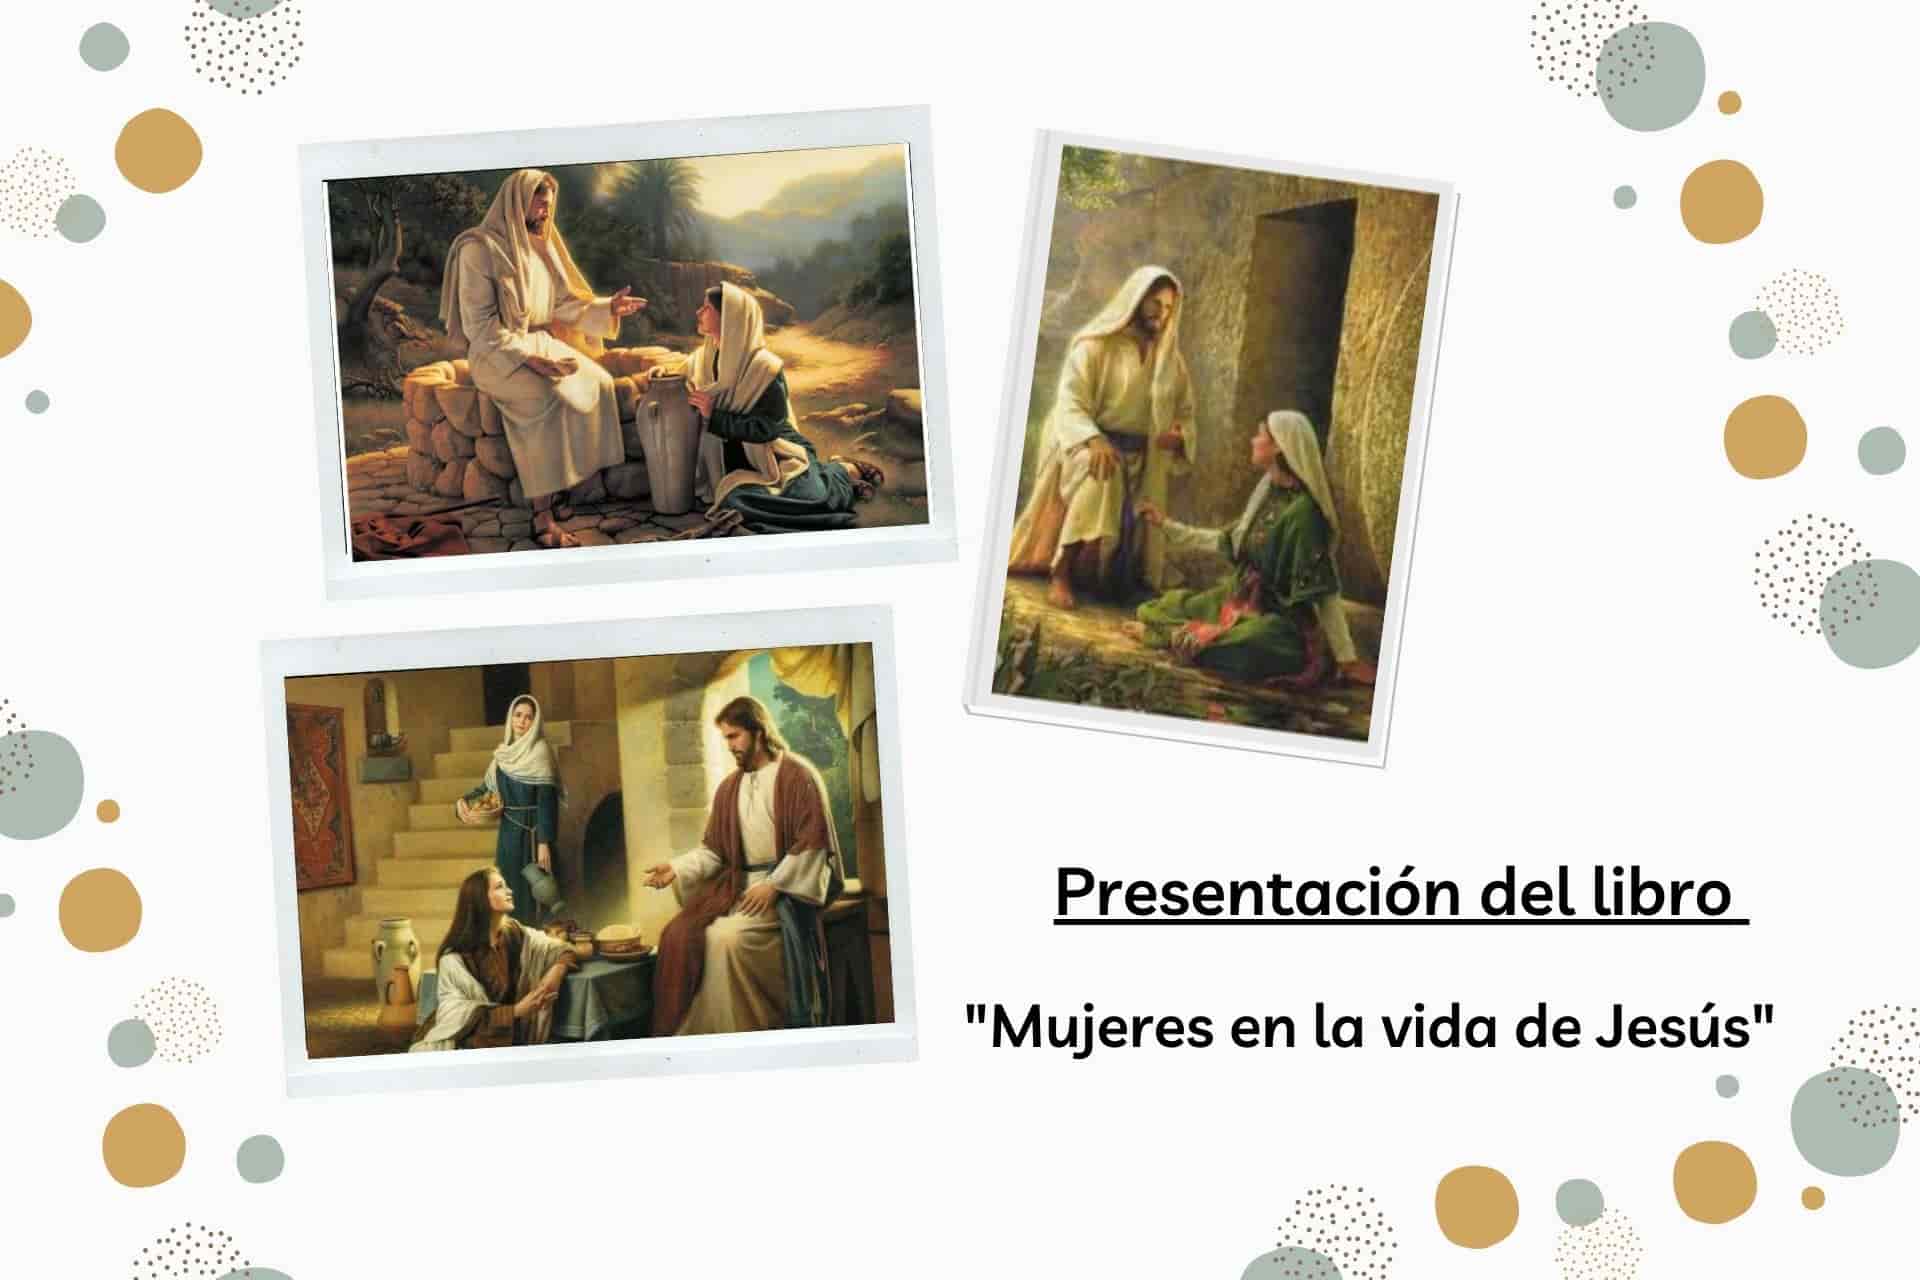 Presentación libro "Mujeres en la vida de Jesús"